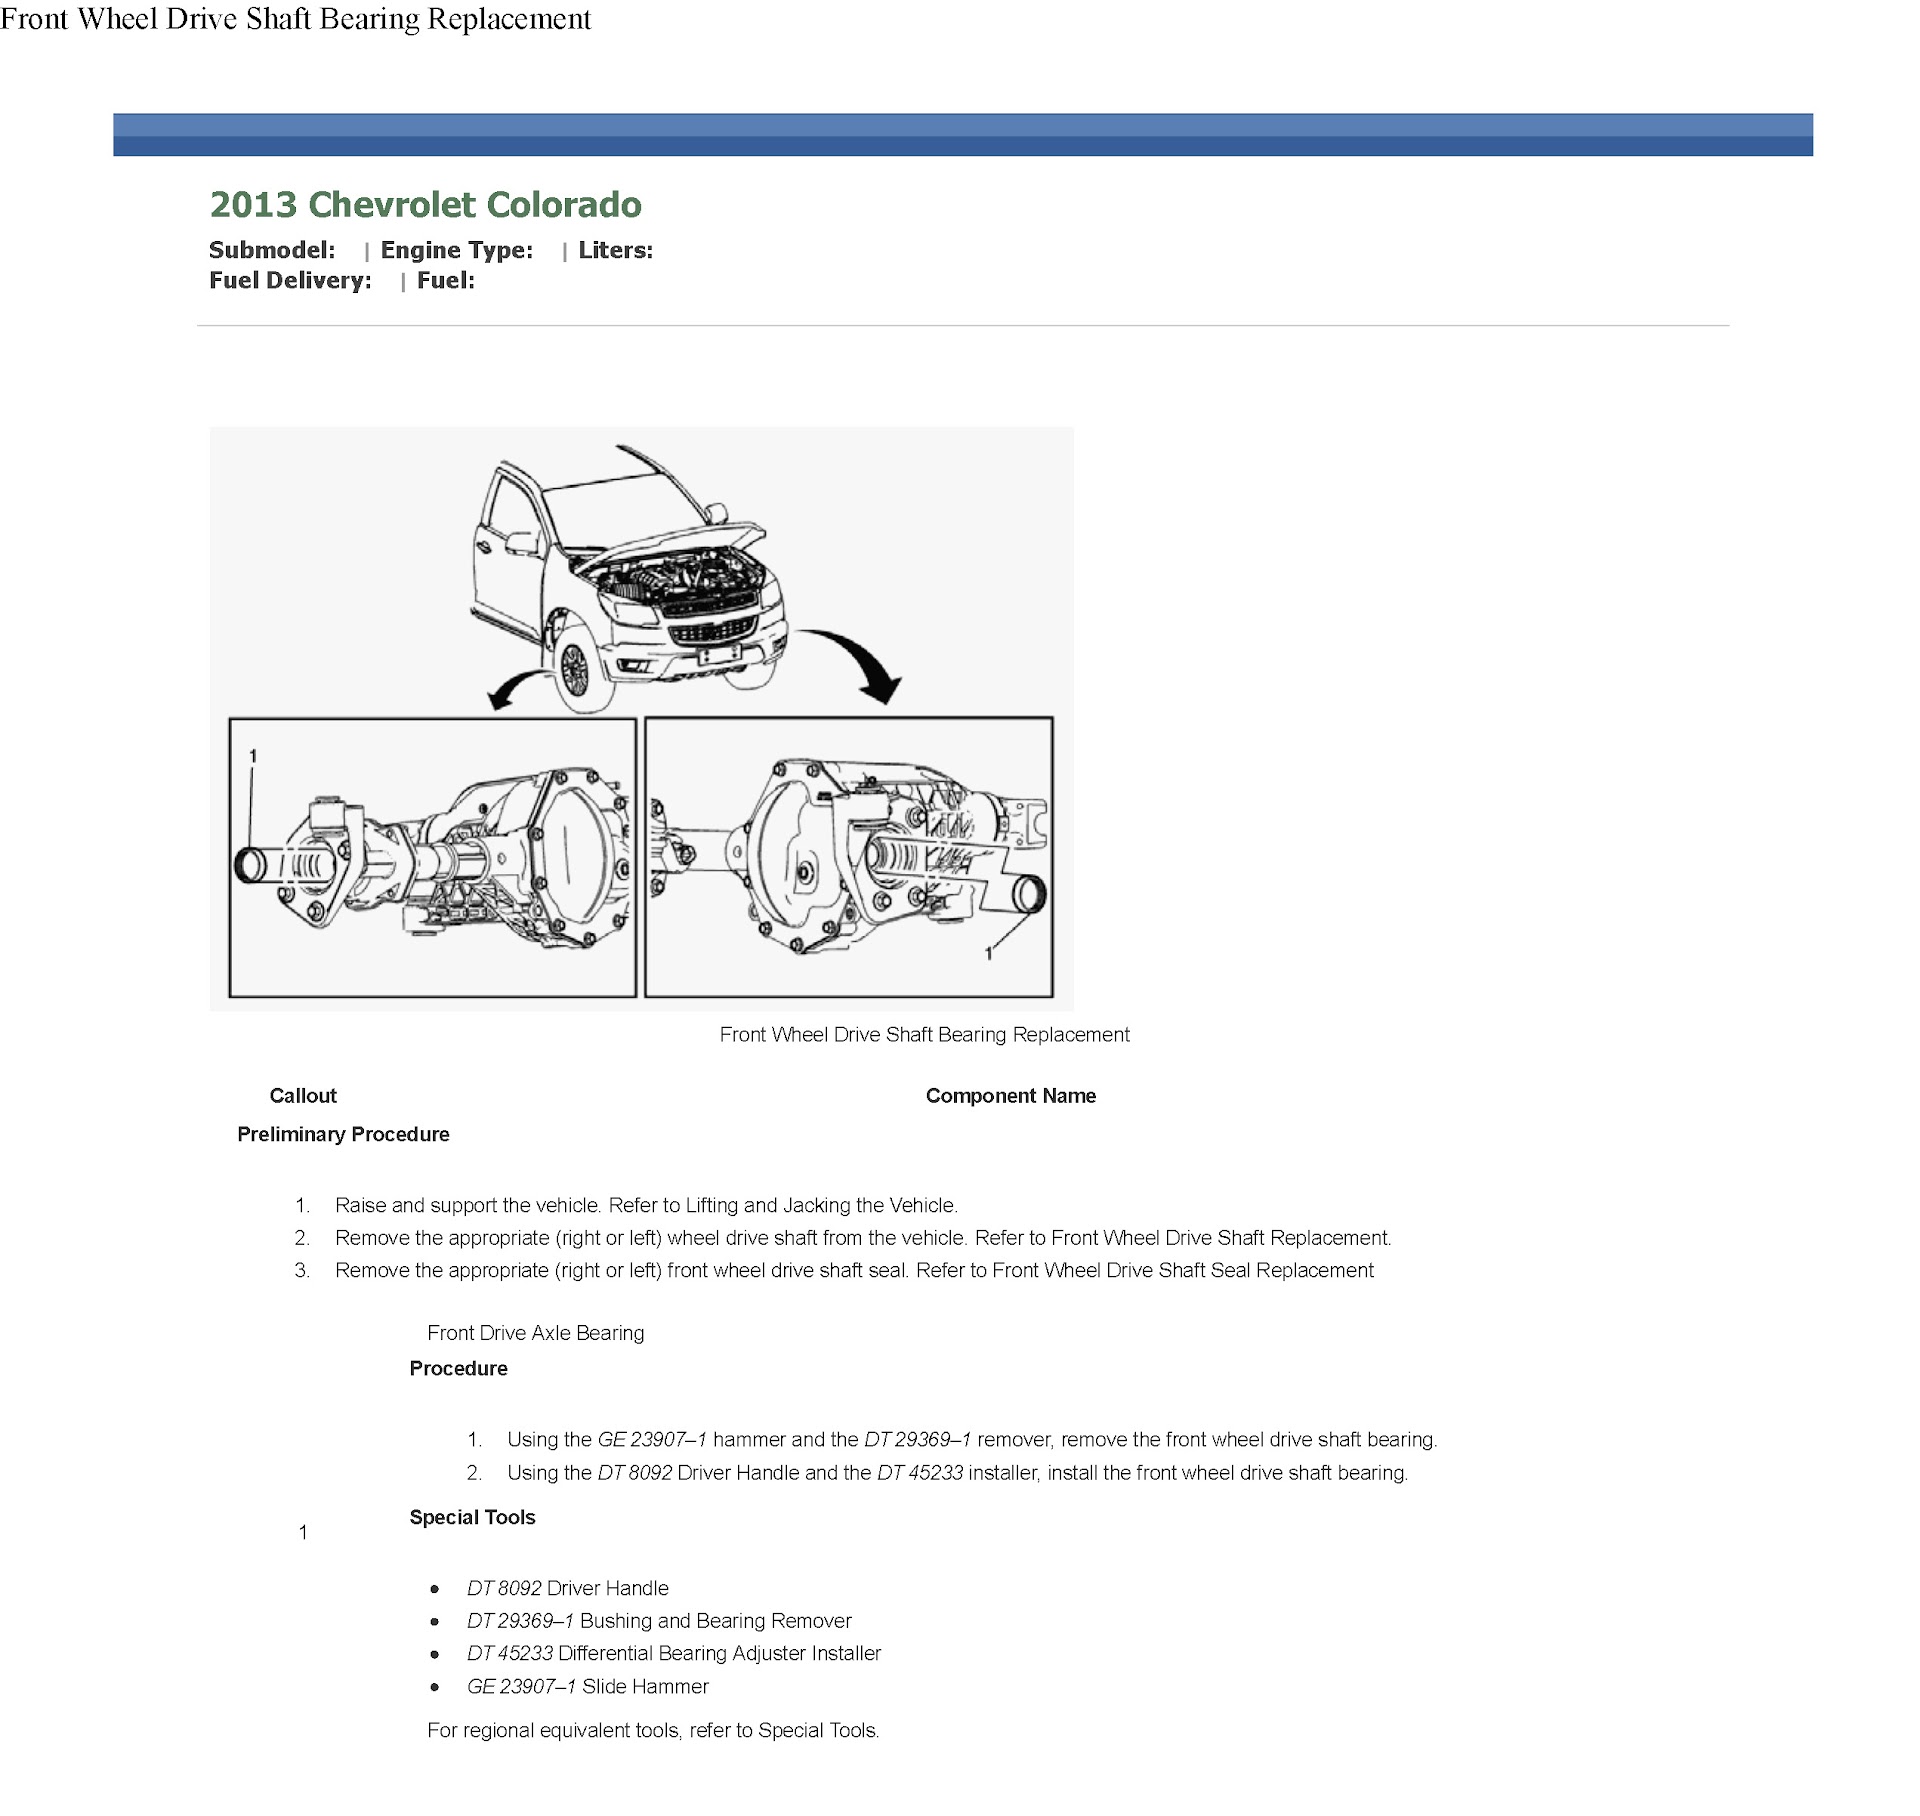 2012-2017 Holden Chevrolet Colorado Service Repair Manual